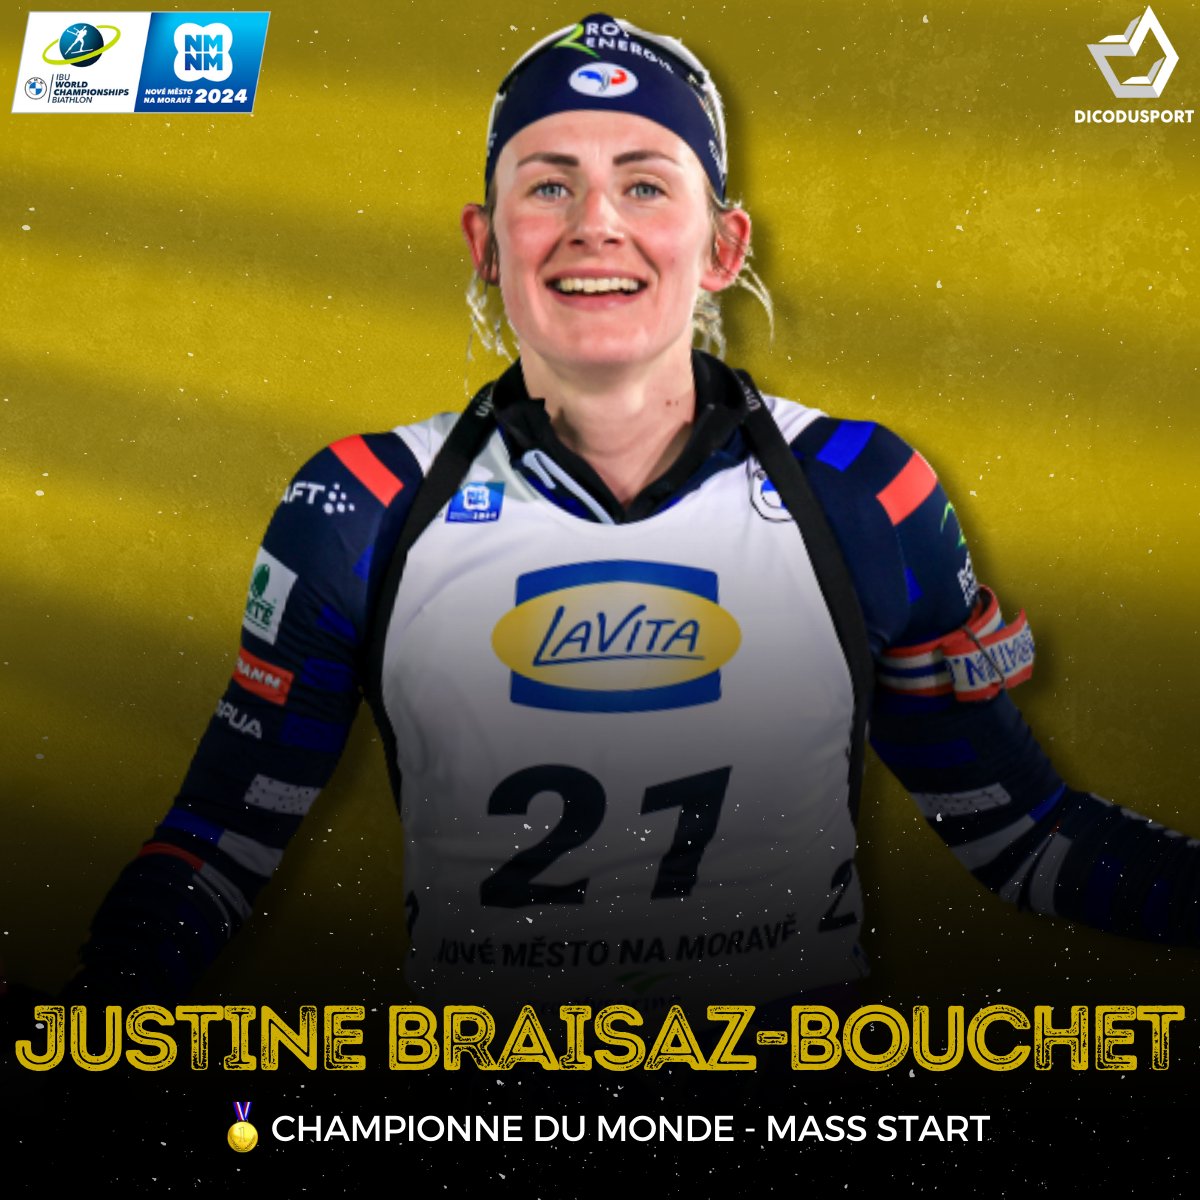 🇫🇷😍🔥 𝐂𝐇𝐀𝐌𝐏𝐈𝐎𝐎𝐎𝐎𝐍𝐍𝐄 𝐃𝐔 𝐌𝐎𝐎𝐍𝐃𝐄 !!!

Justine Braisaz-Bouchet prend la médaille d'or sur la mass start des Mondiaux de Nove Mesto, devant Lisa Vittozzi et Lou Jeanmonnot ! 🤯 #NMNM24 #Biathlon